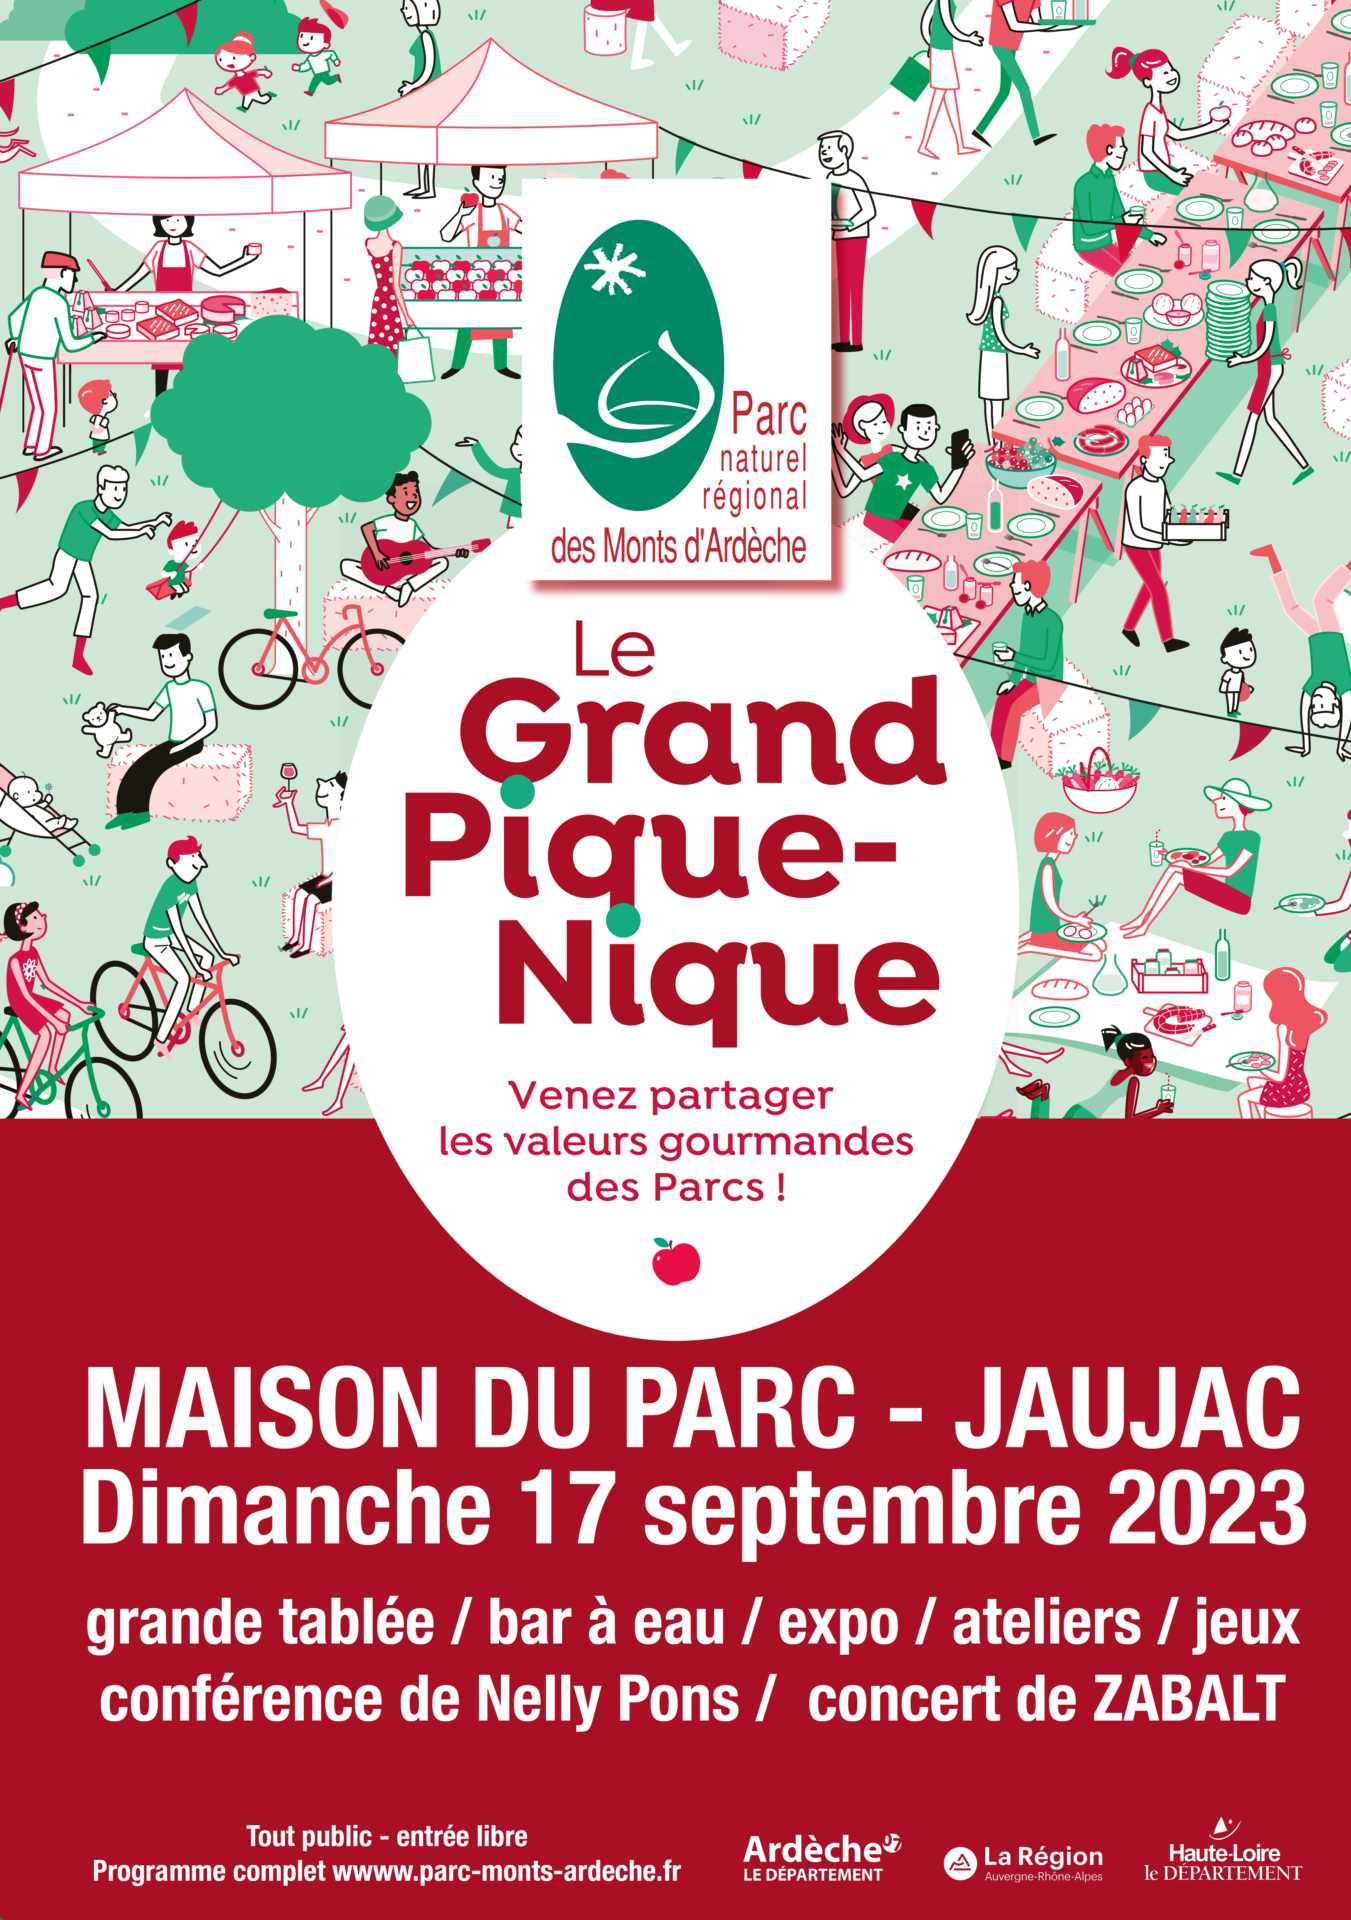 Affiche pour le grand pique nique du Parc des Monts d'Ardèche